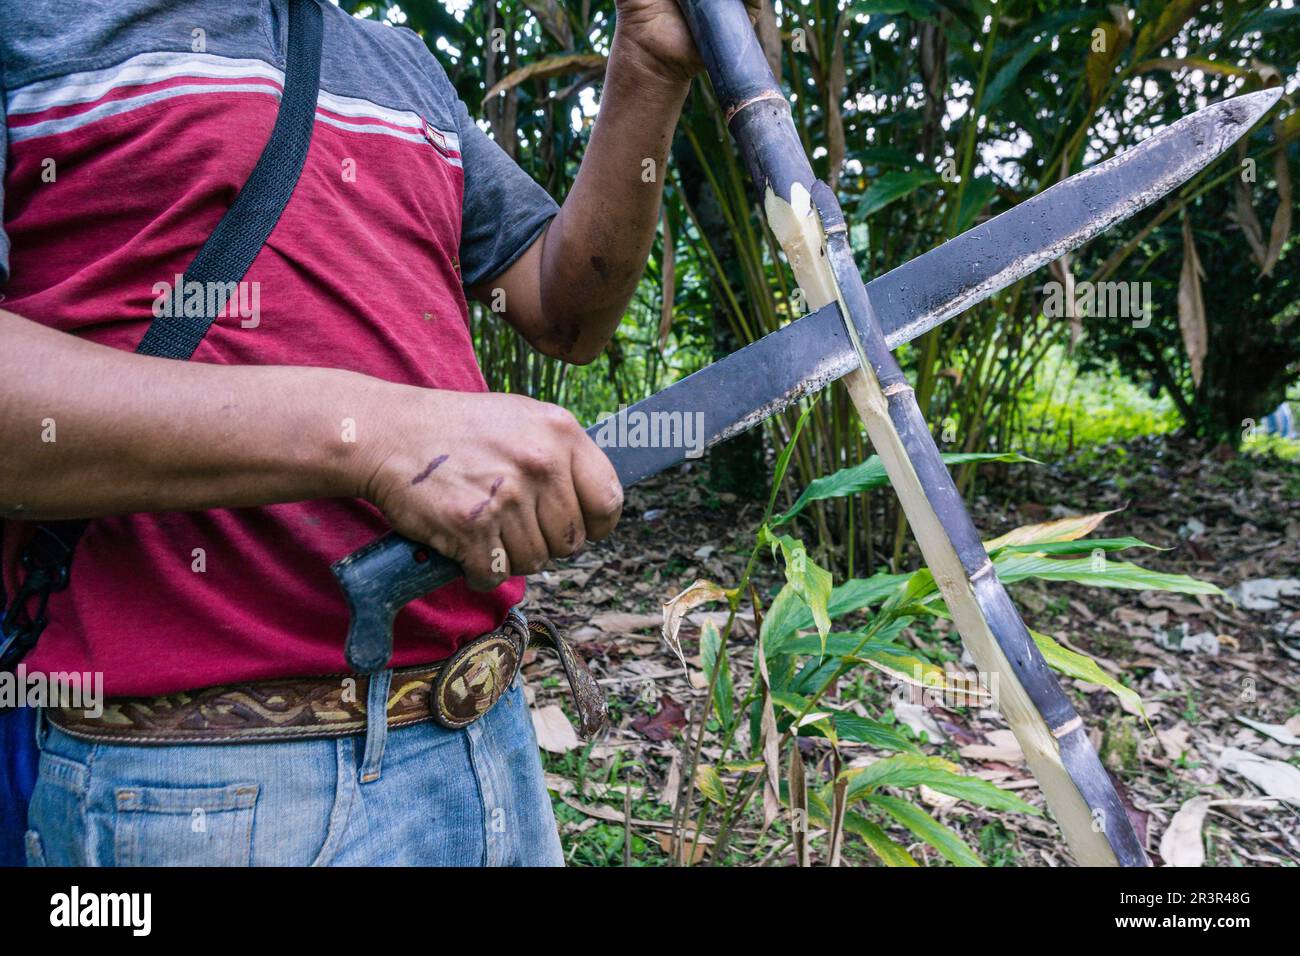 agricultor en un campo de caña de azucar, Saccharum officinarum, Los Cerritos, Lancetillo, La Parroquia, zona Reyna, Quiche, Guatemala, Central America. Stock Photo